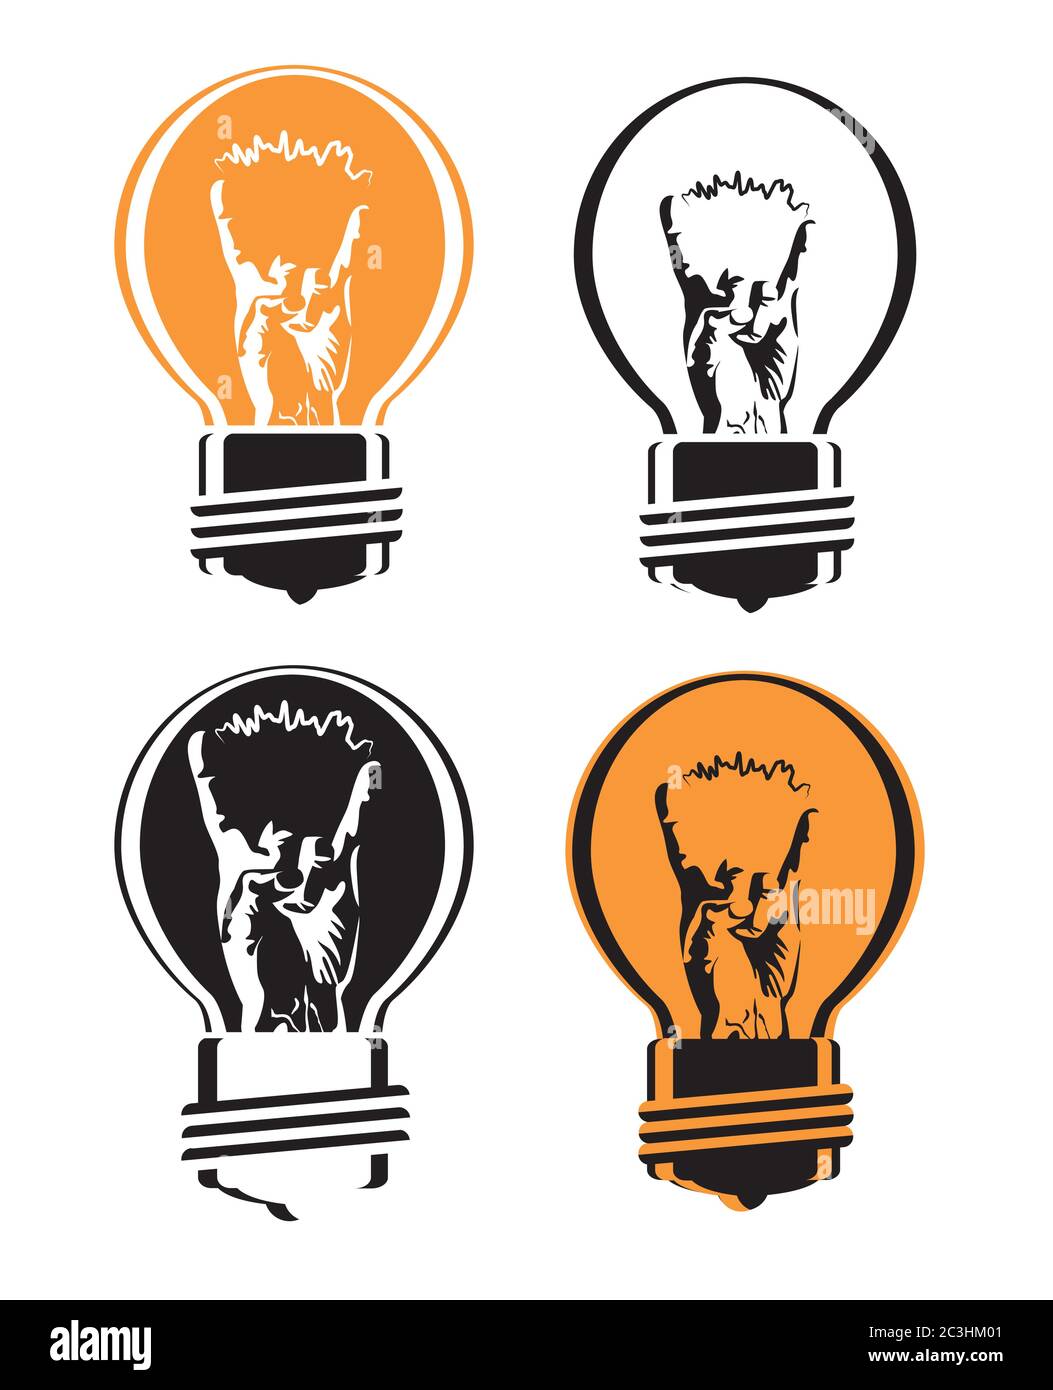 illustration vectorielle stylisée avec filament d'ampoule avec un geste de la main cool Illustration de Vecteur